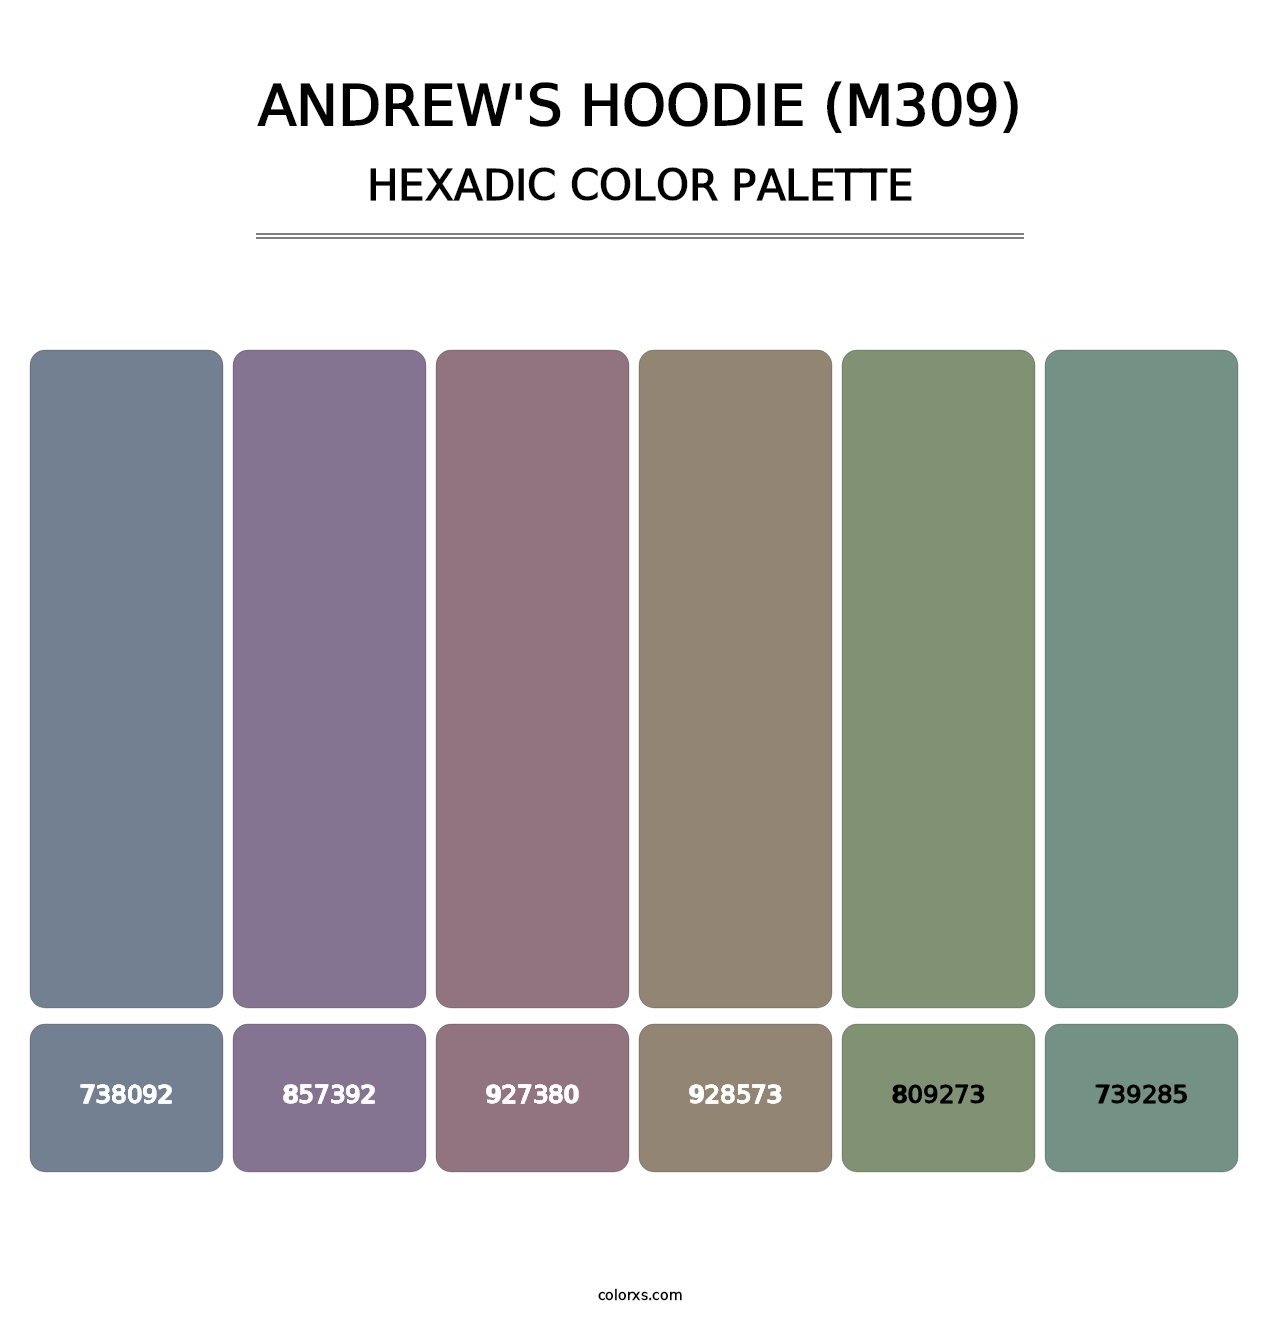 Andrew's Hoodie (M309) - Hexadic Color Palette